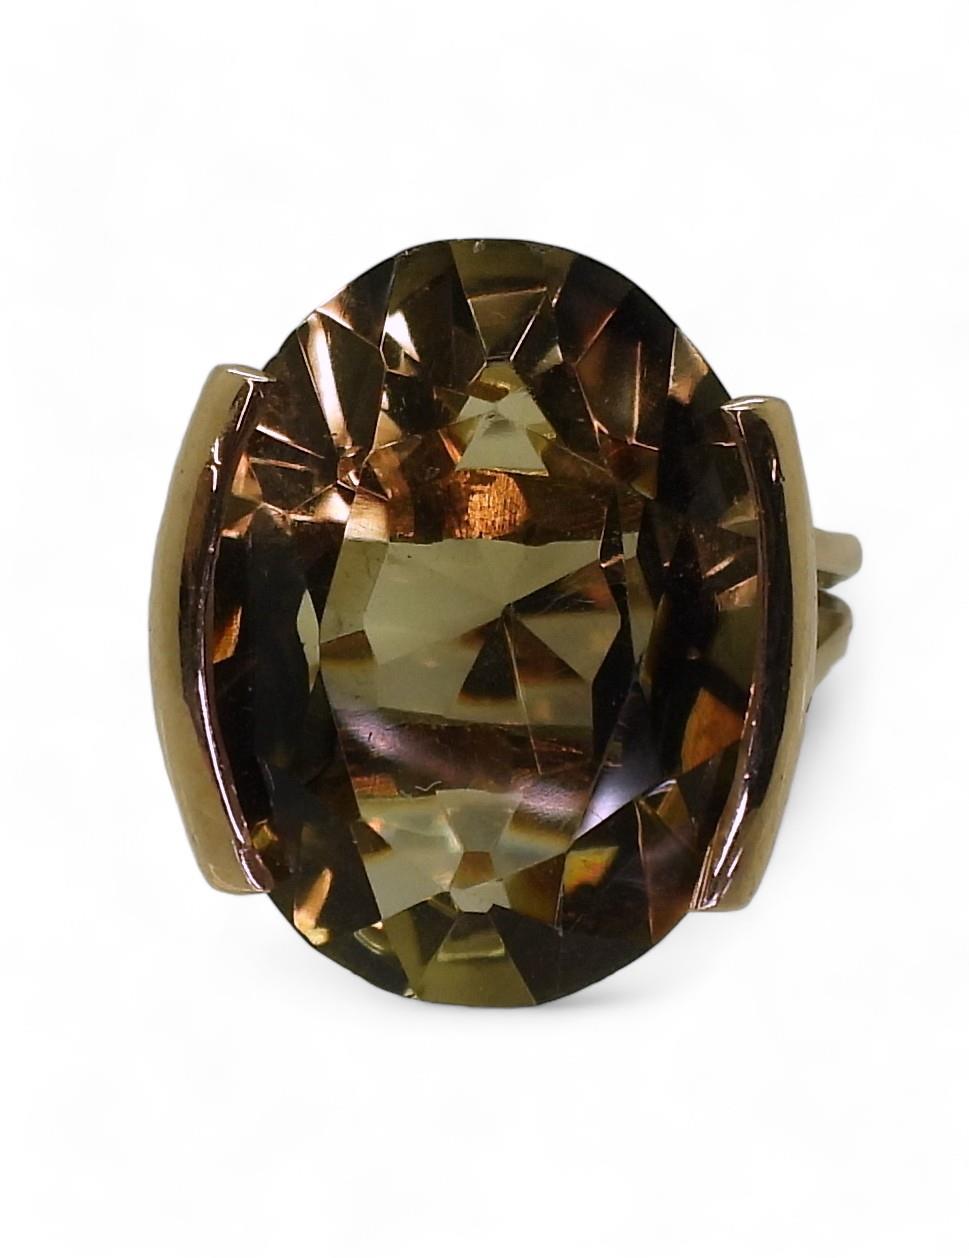 A 9ct gold smoky quartz retro ring, Edinburgh hallmarks for 1978, finger size O1/2, weight 6.6gms